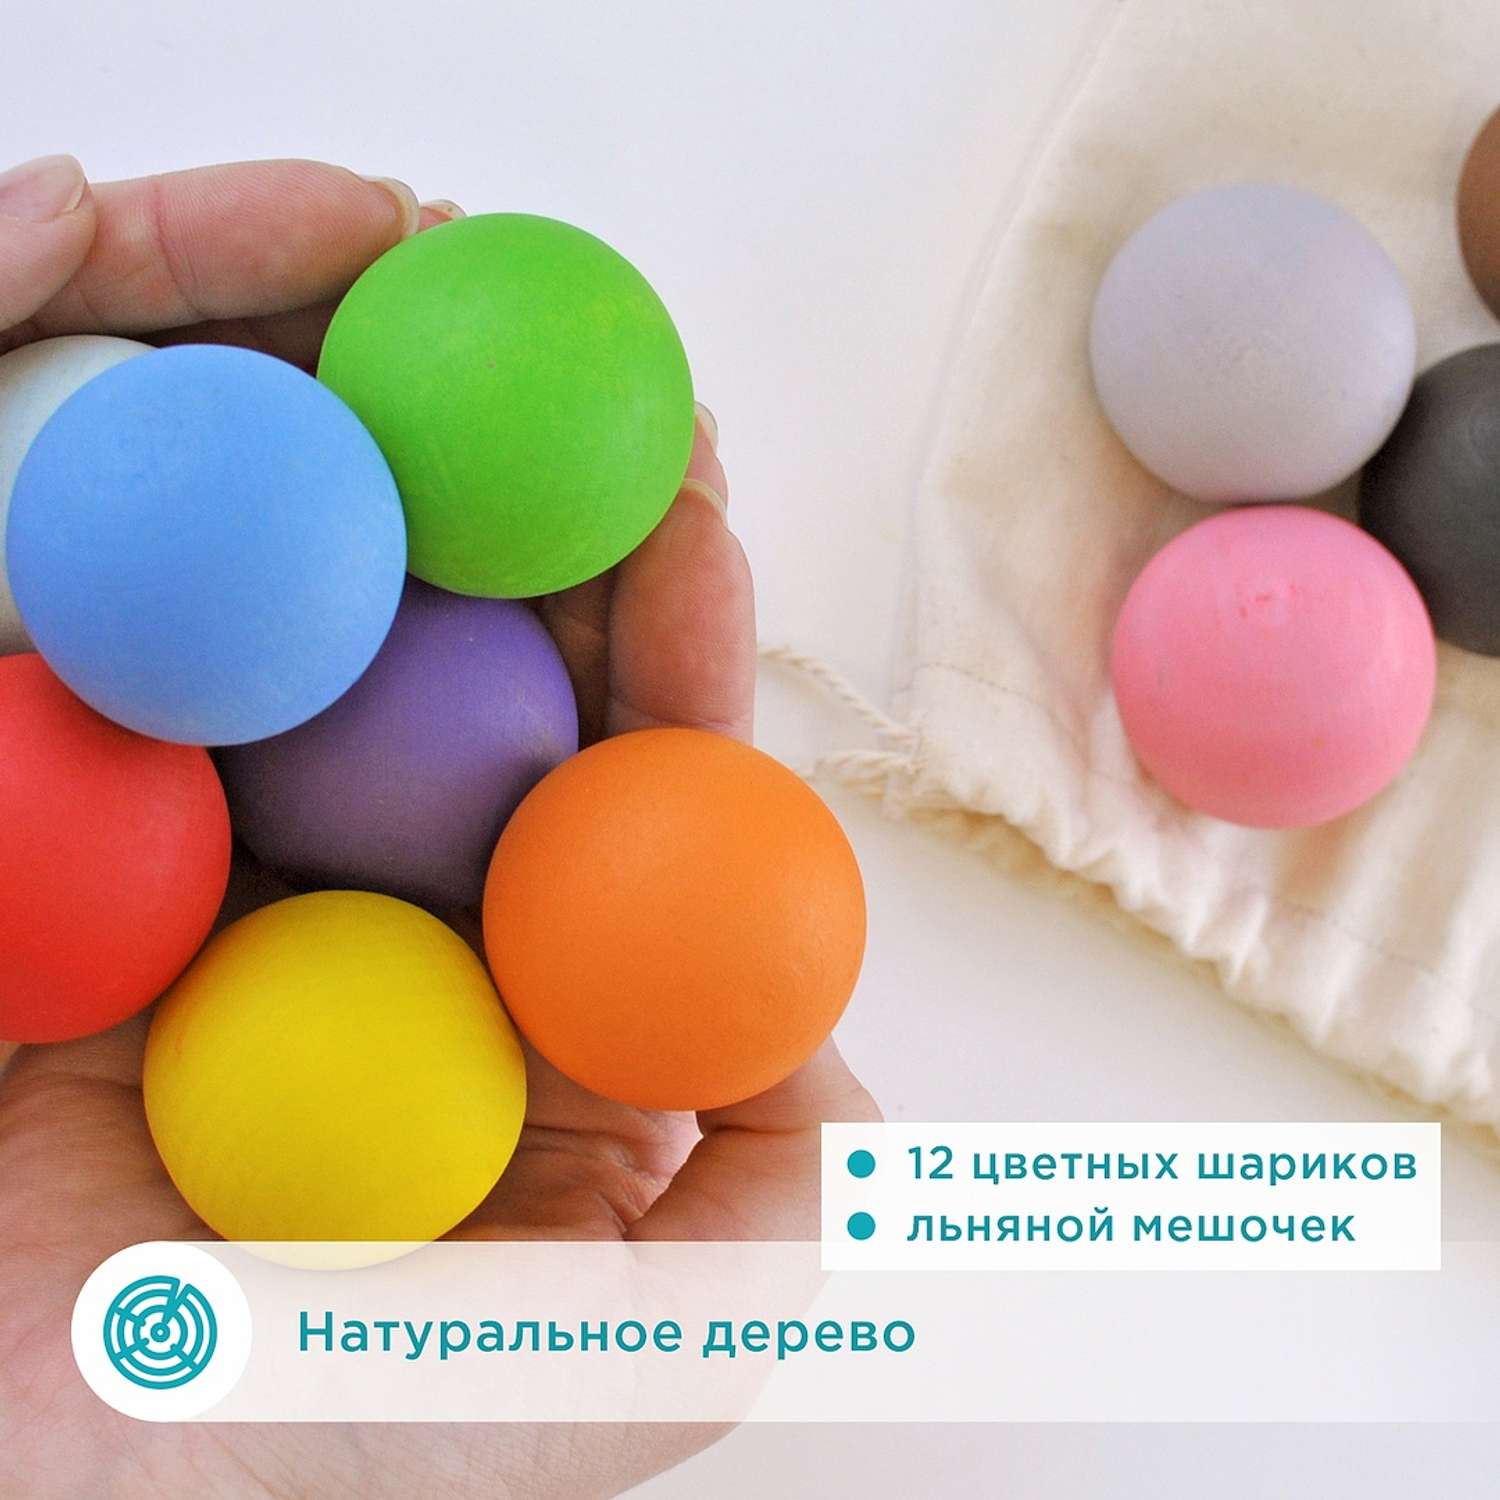 Развивающие игрушки Ulanik Шарики цветные - фото 7